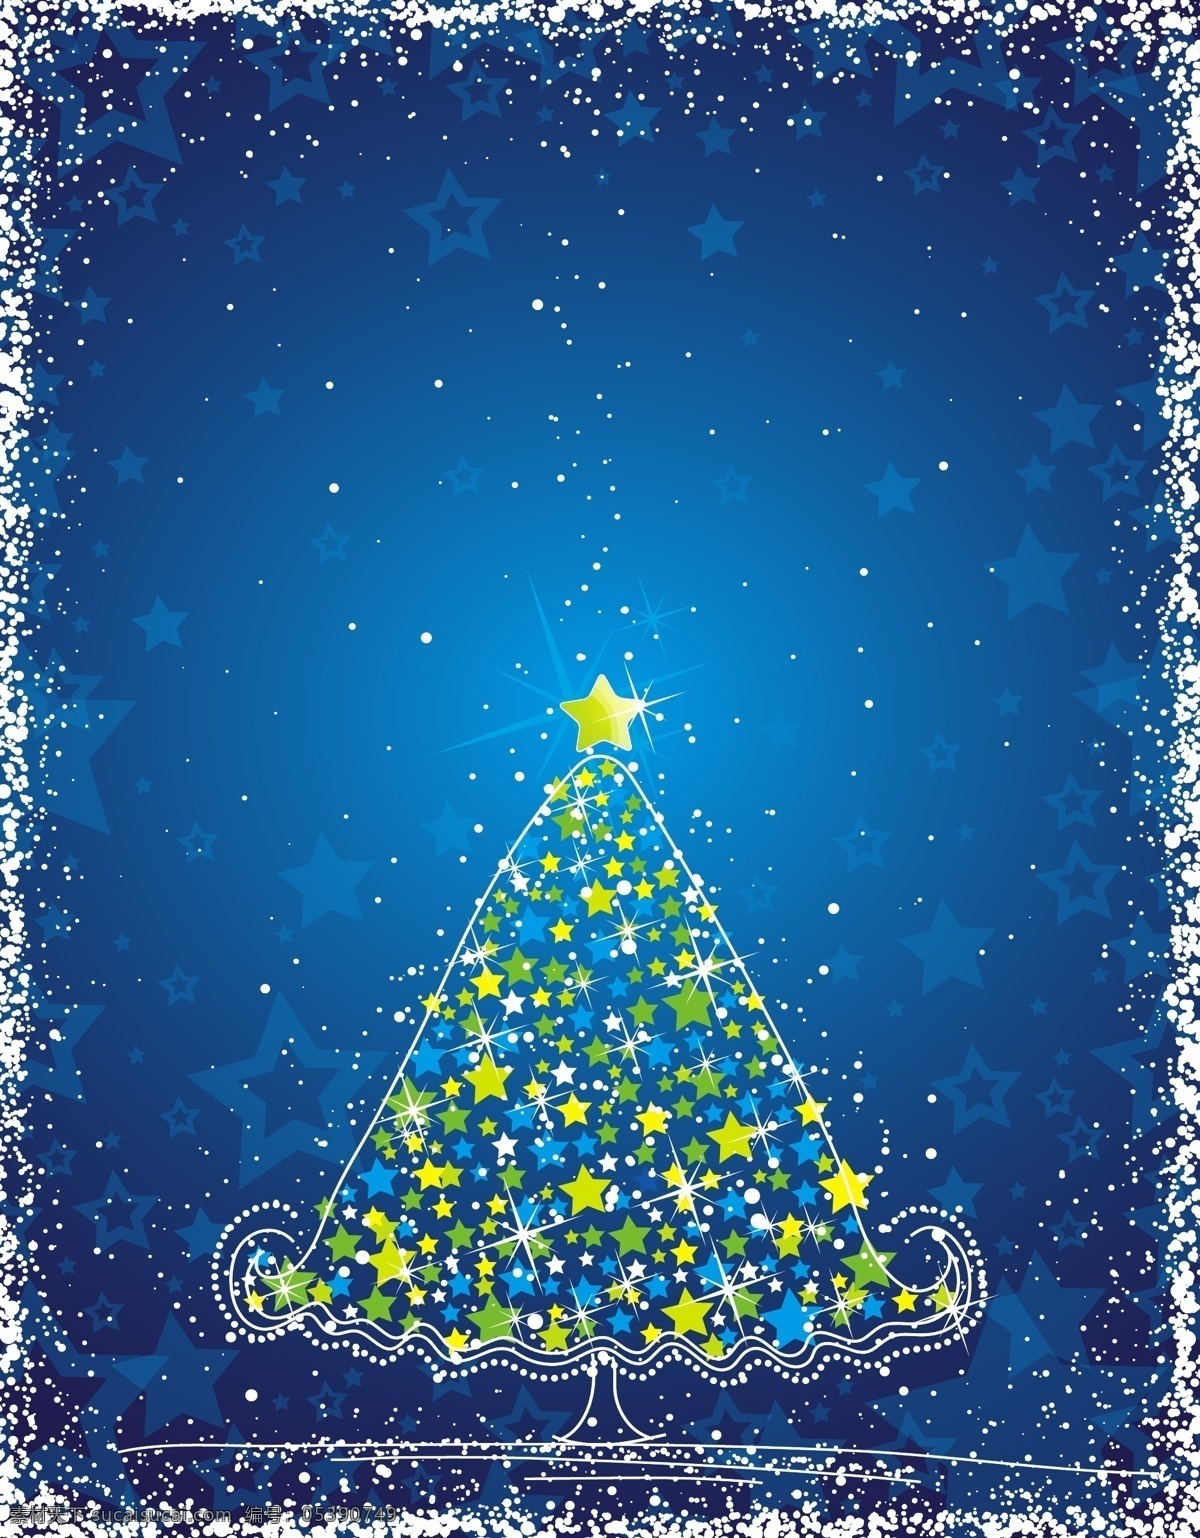 矢量 星星 圣诞树 装饰 背景图片 圣诞节 五彩缤纷 雪花 节日素材